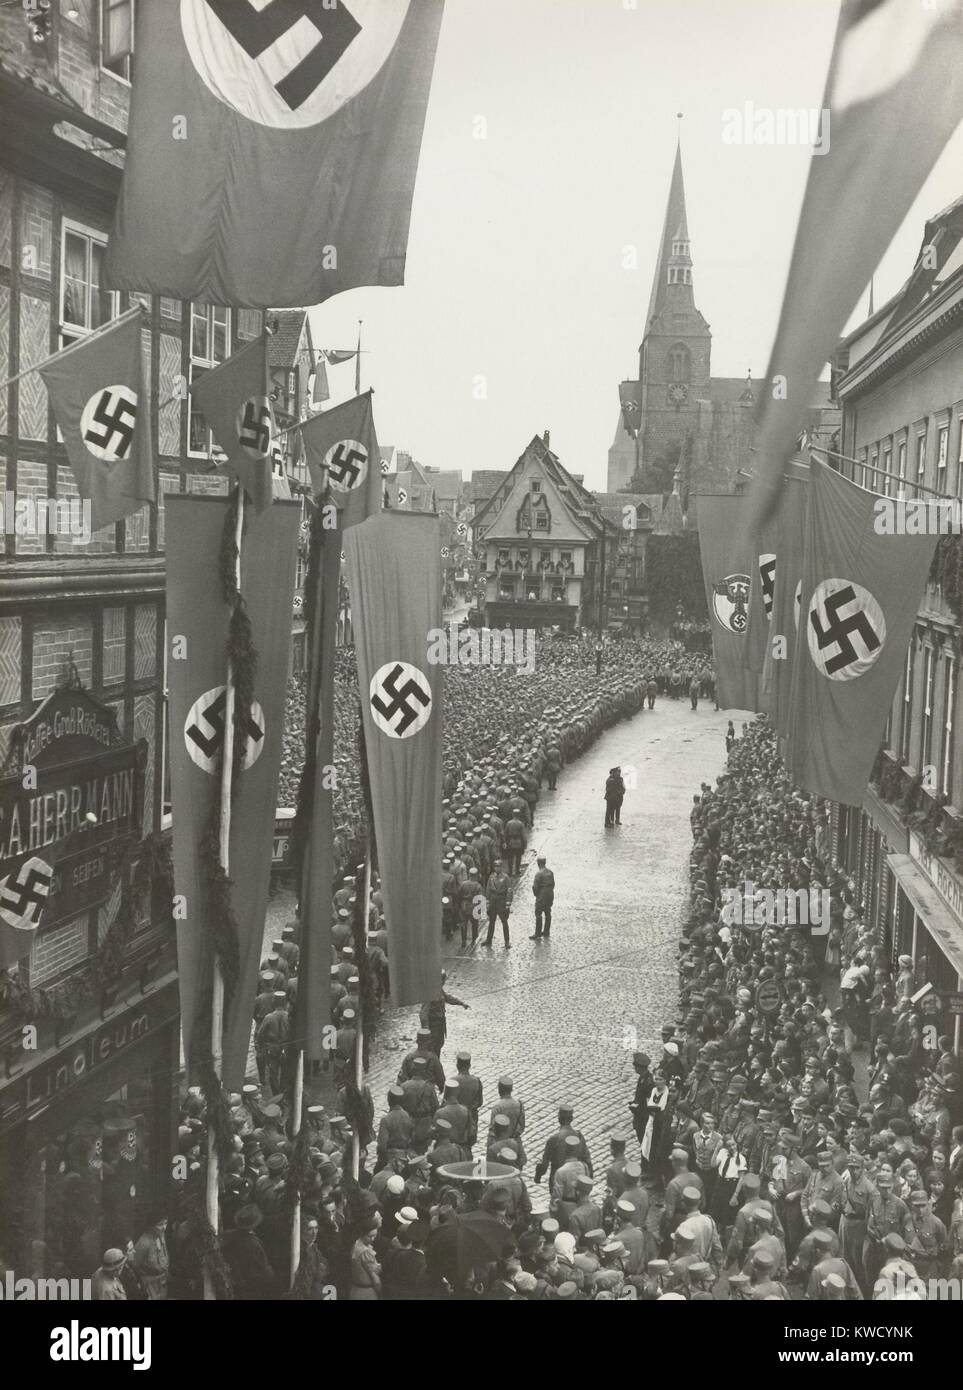 Nazi celebrazione del millesimo anniversario del Reich tedesco, 1936. Il millesimo anniversario della morte di Heinrich mi è stata celebrata nella piazza del mercato di Quedlinburg, Germania, 2 luglio 1936 (BSLOC 2017 2 68) Foto Stock